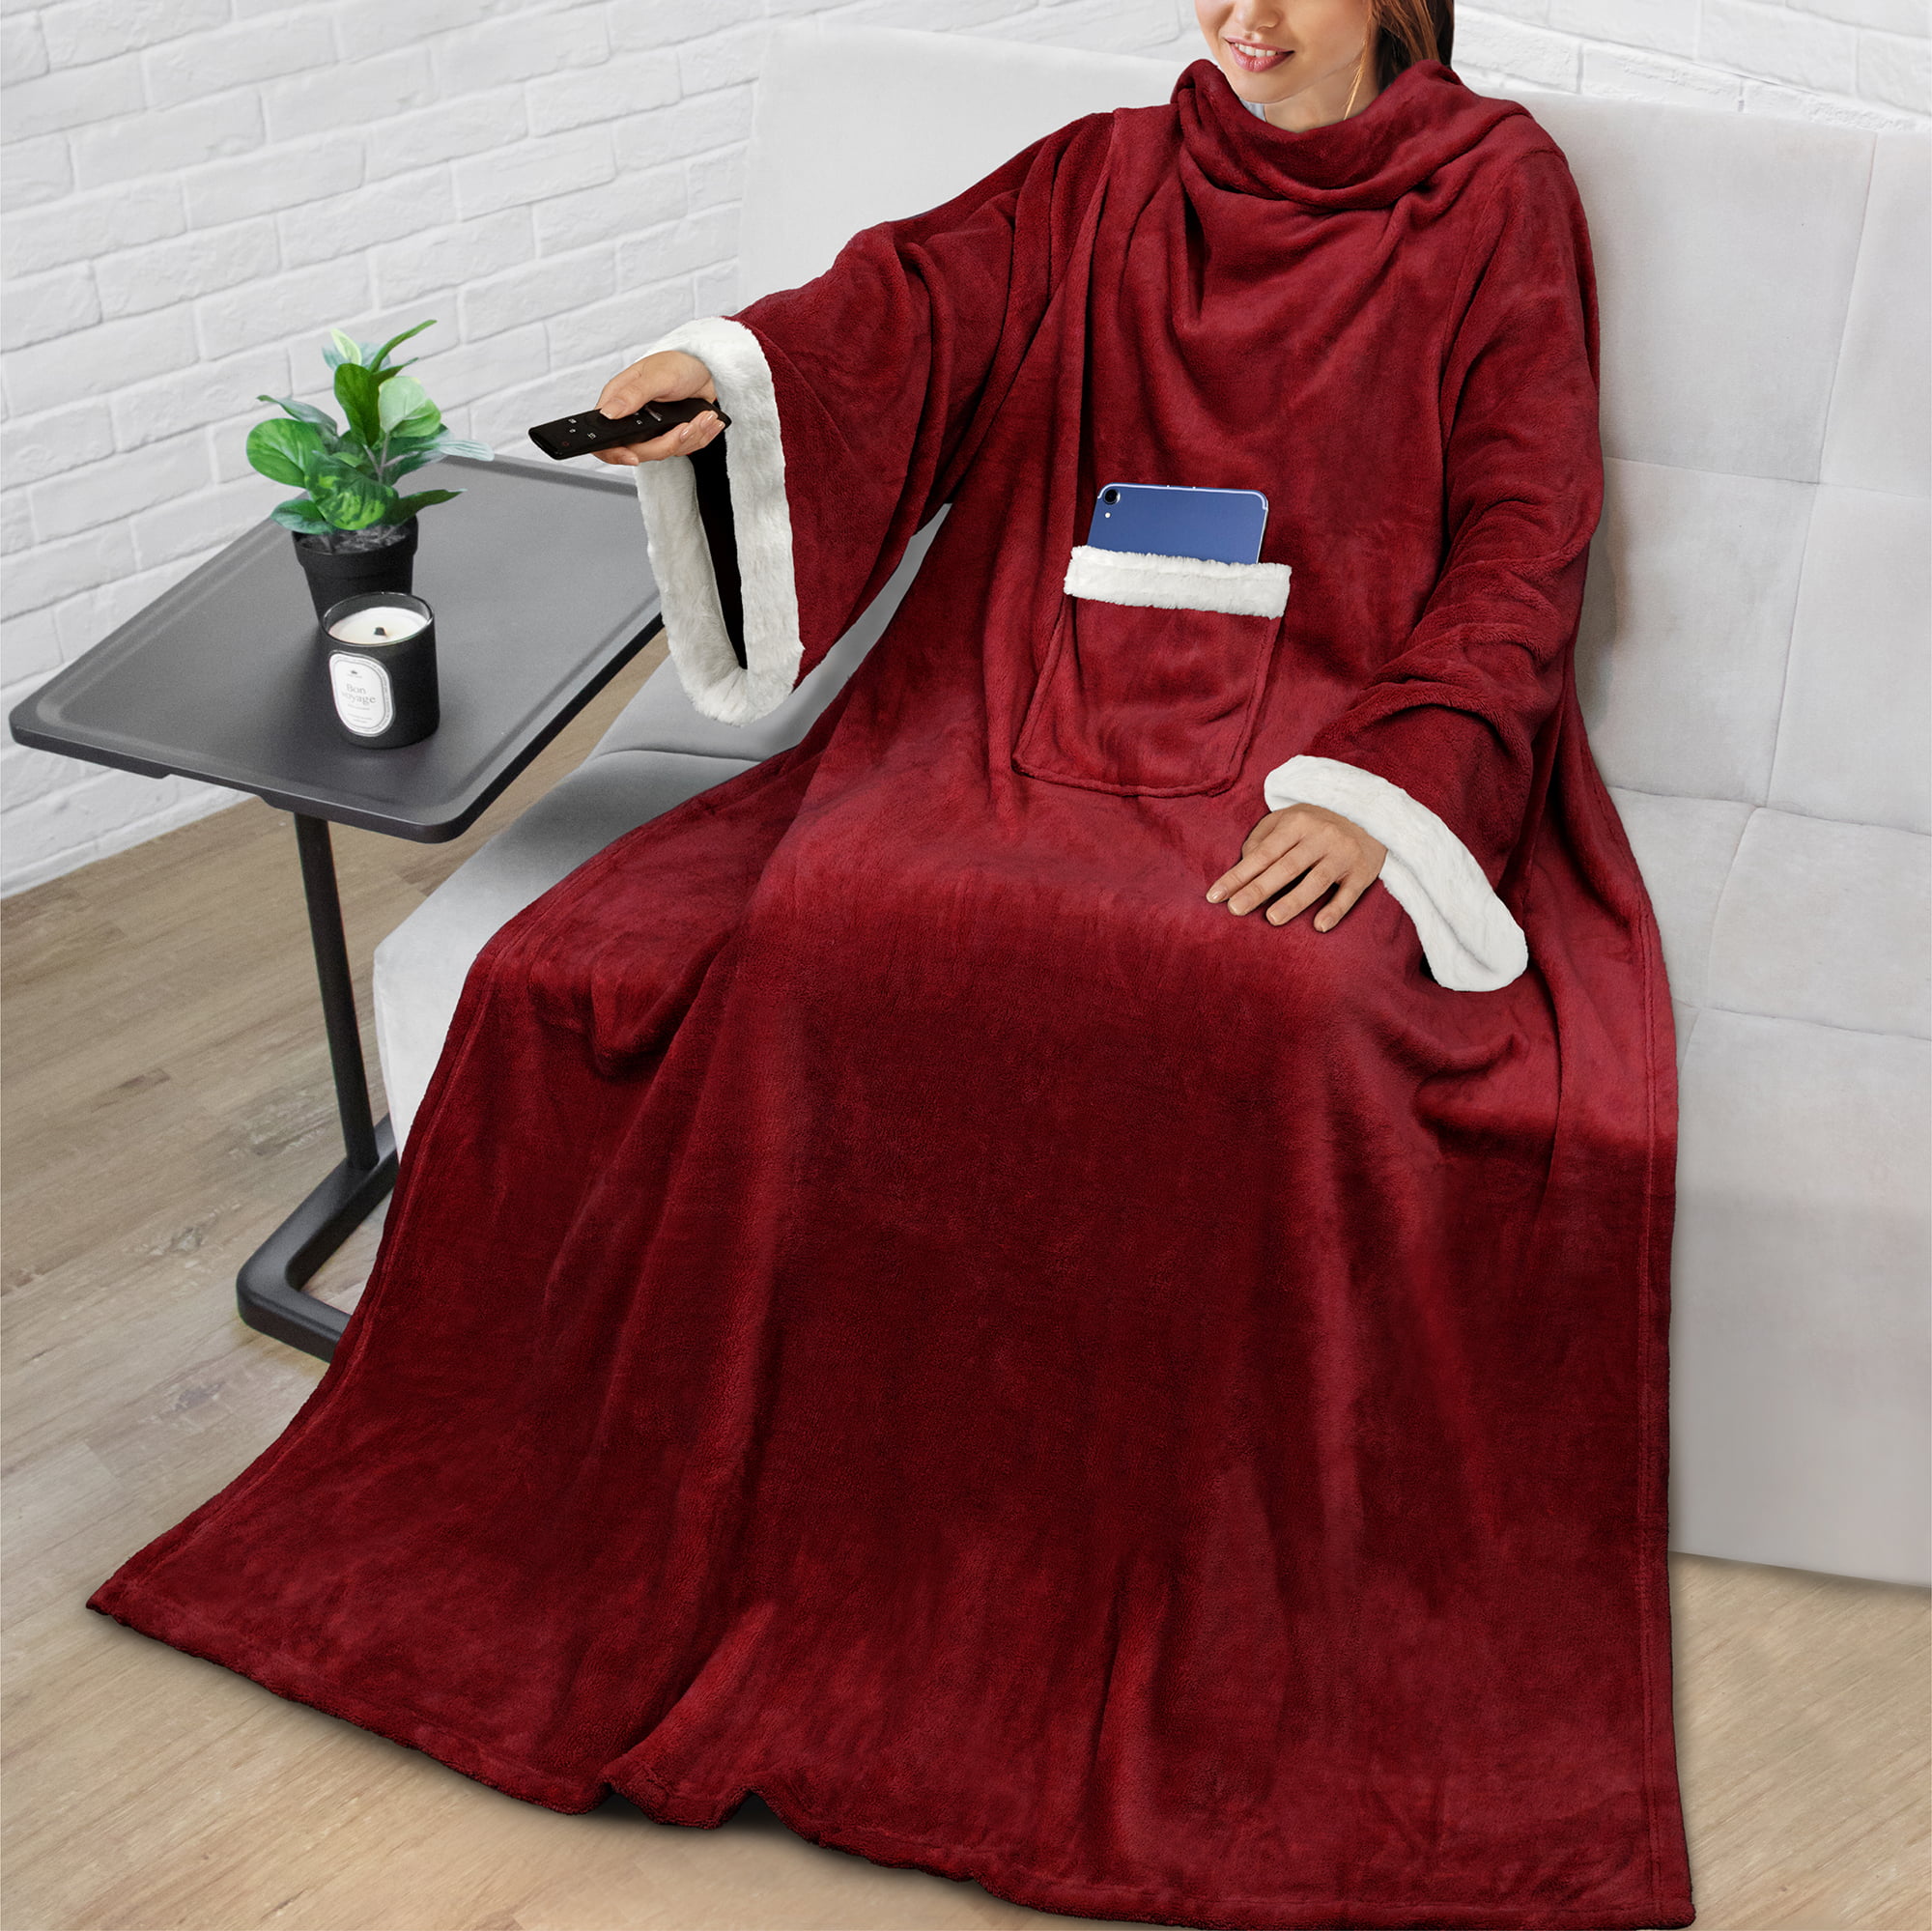 Hopeee Witch Pattern Velvet Hooded Blanket Wearable Fleece Throw Blanket Super Soft for Adult Child 